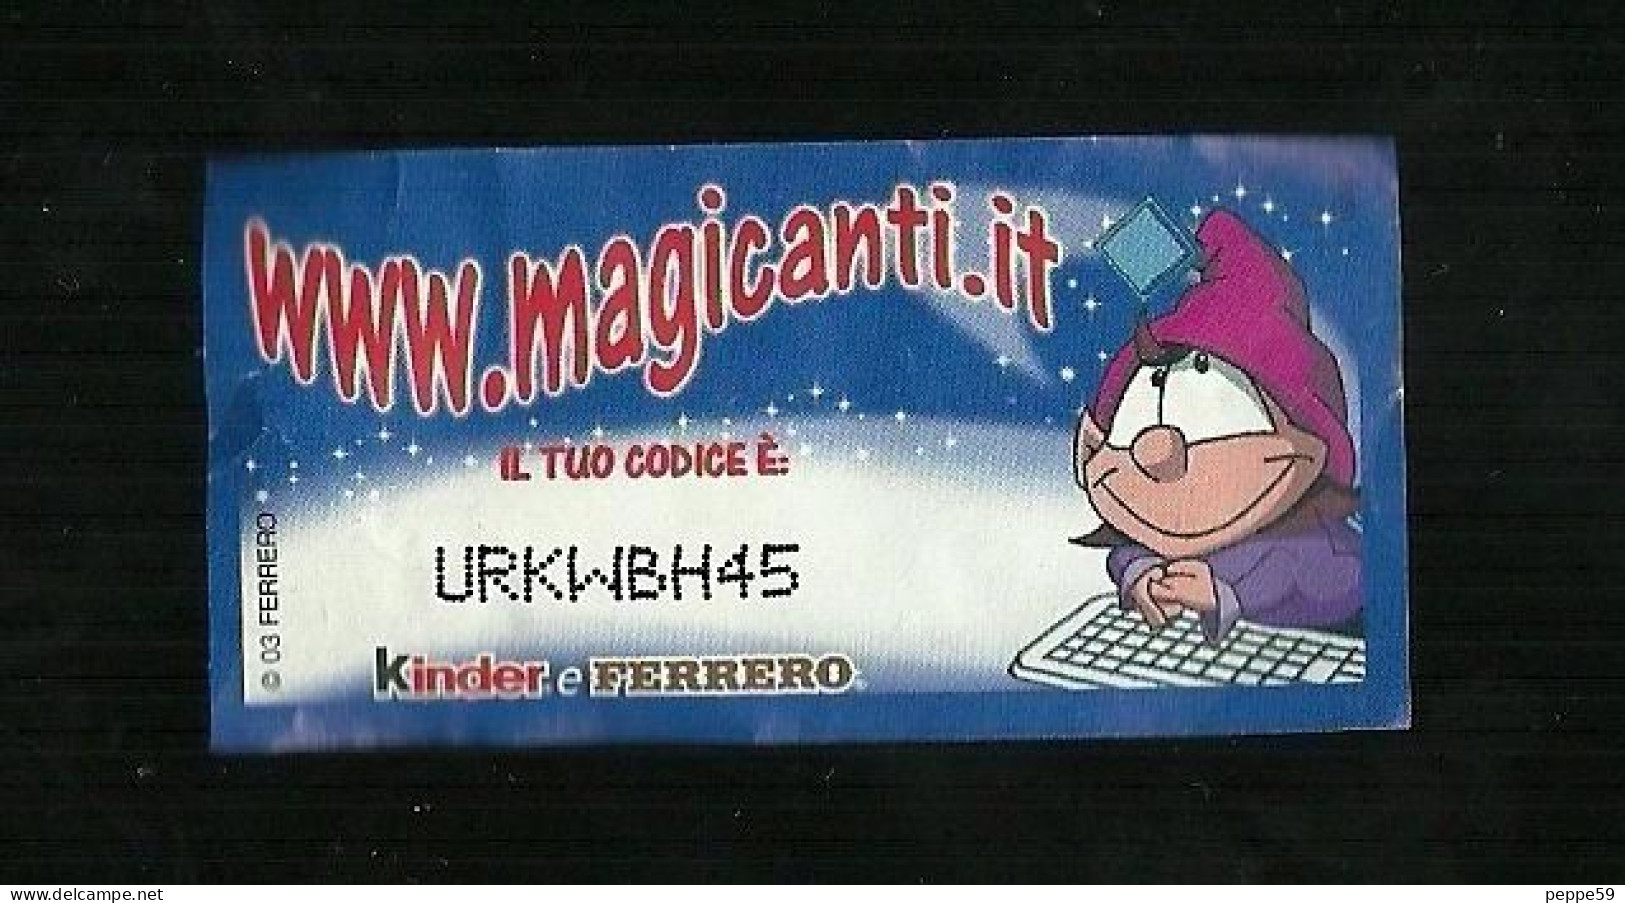 Kinder Ferrero - Magicode 3 - I Magicanti - Instructions